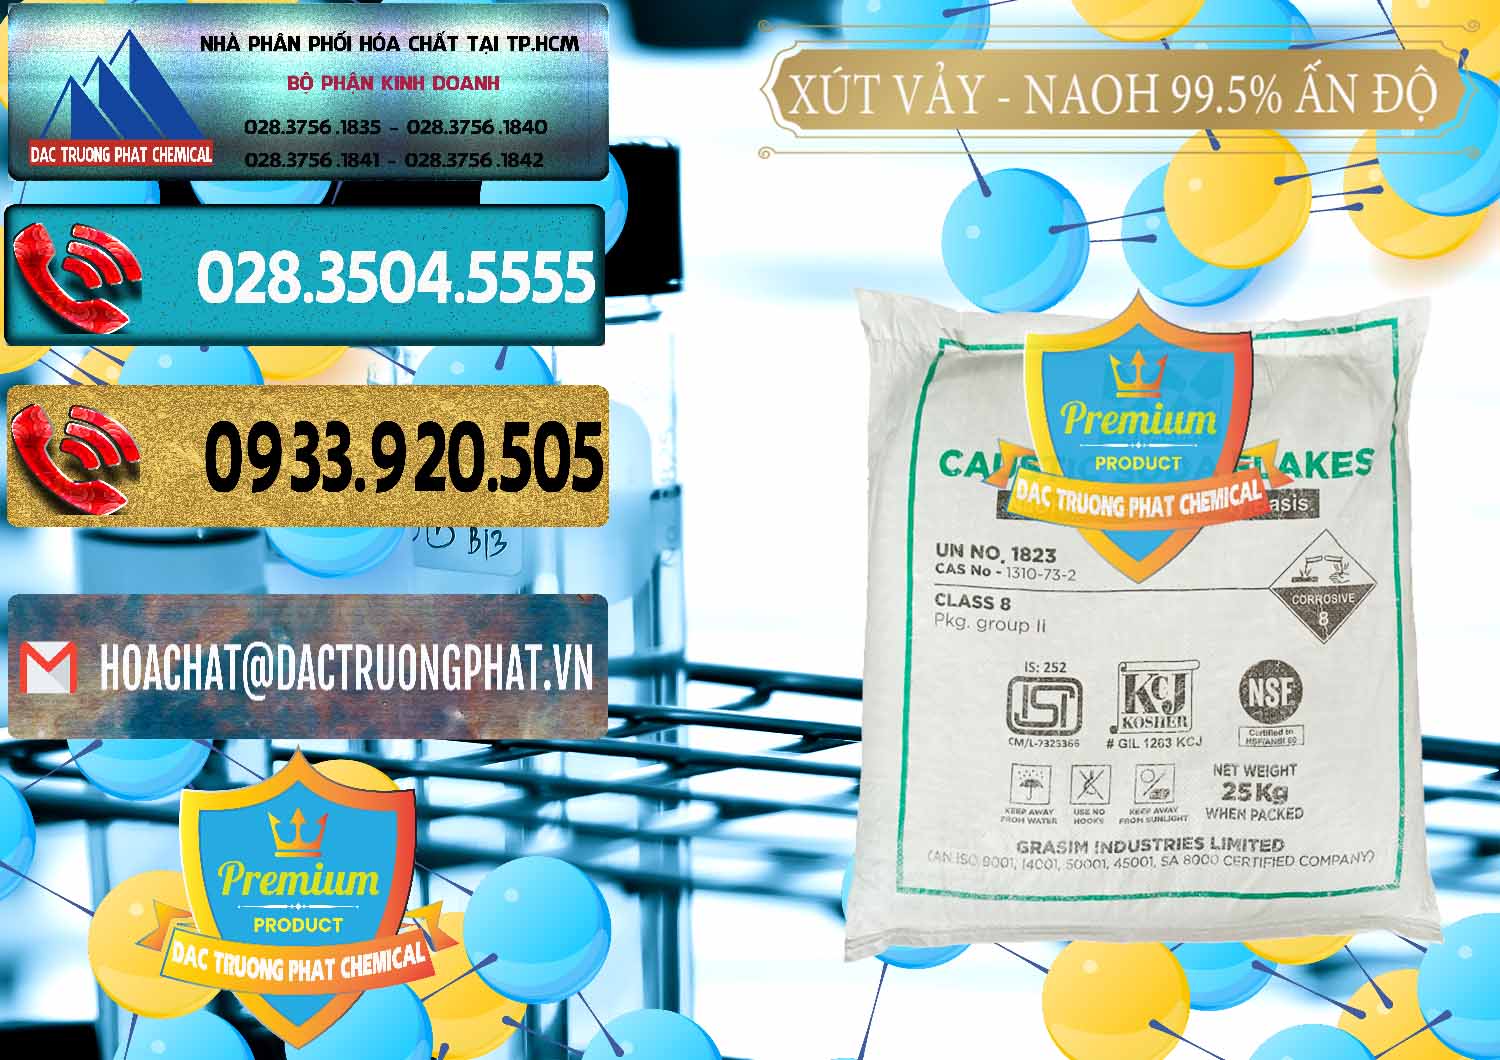 Chuyên nhập khẩu và bán Xút Vảy - NaOH Vảy 99.5% Aditya Birla Grasim Ấn Độ India - 0170 - Chuyên nhập khẩu và phân phối hóa chất tại TP.HCM - hoachatdetnhuom.com